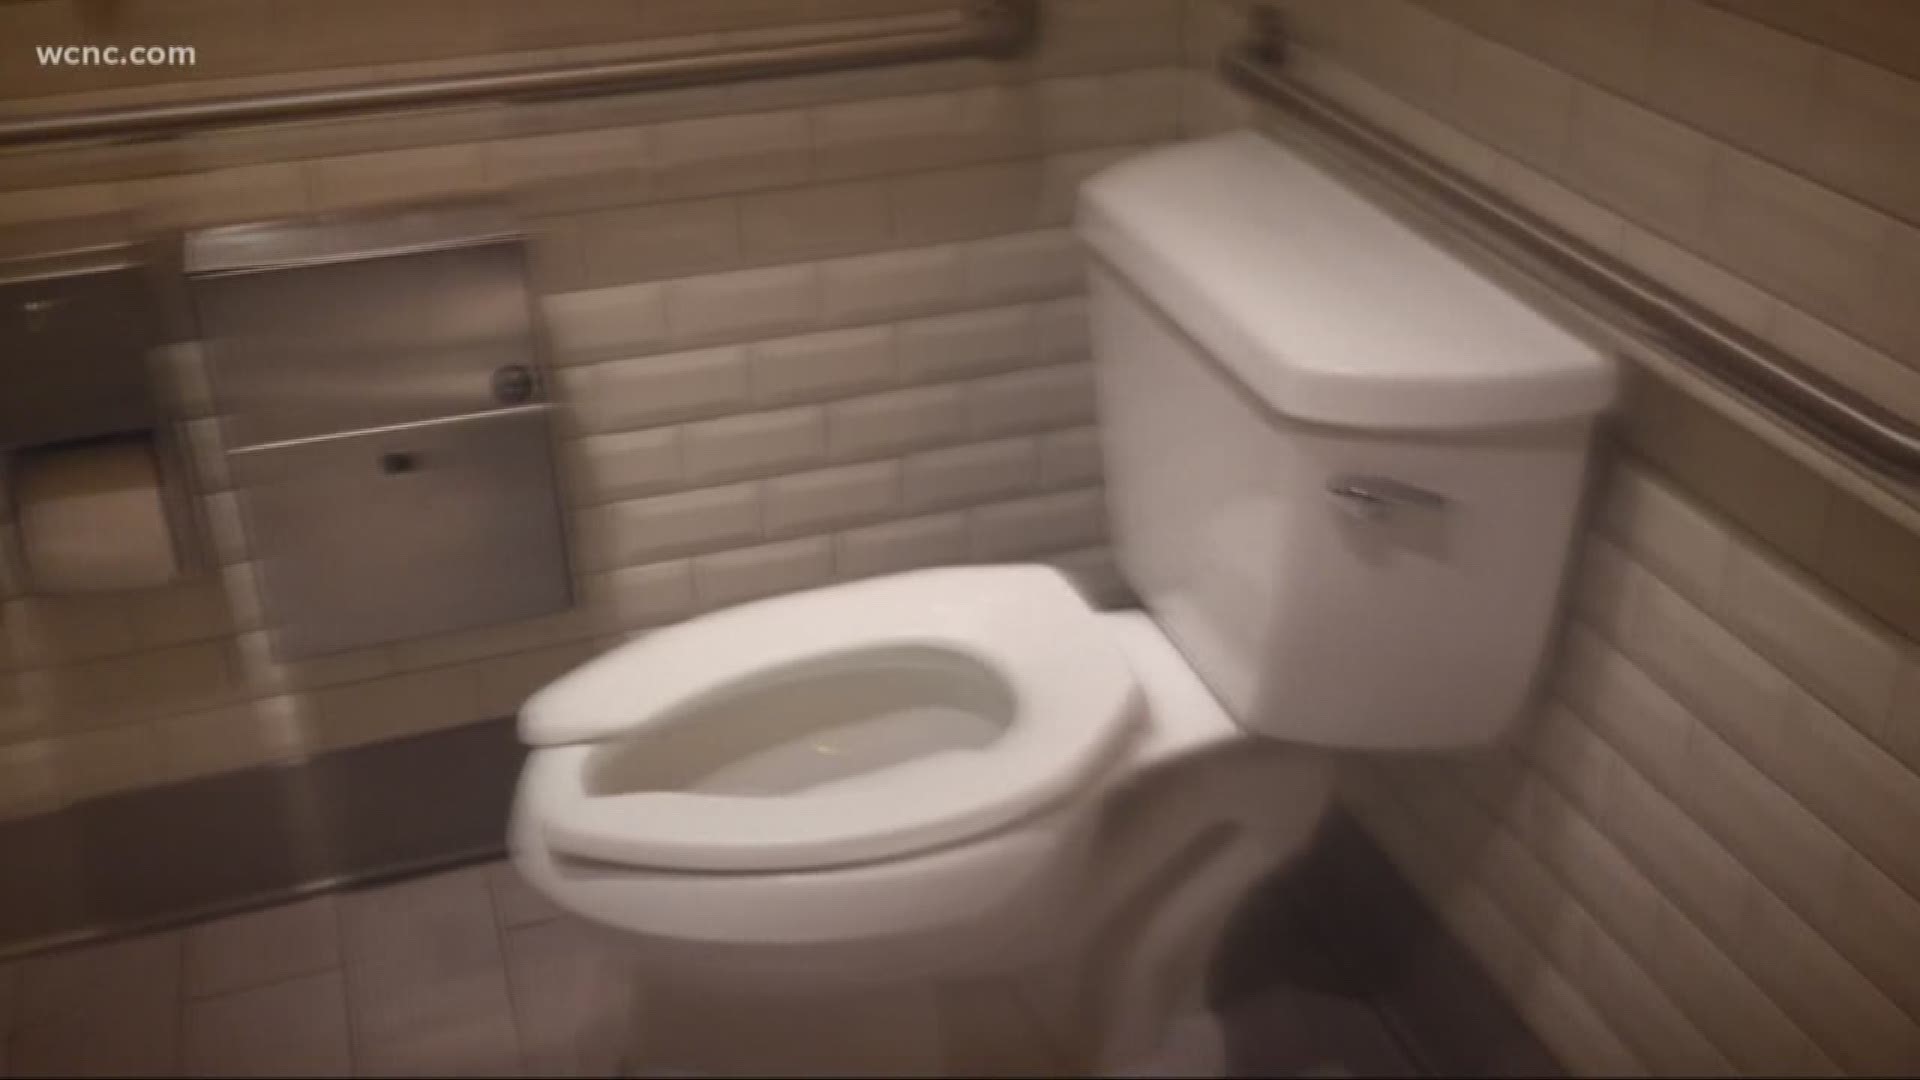 clare humphreys recommends Hidden Camera In Bathroom Pics